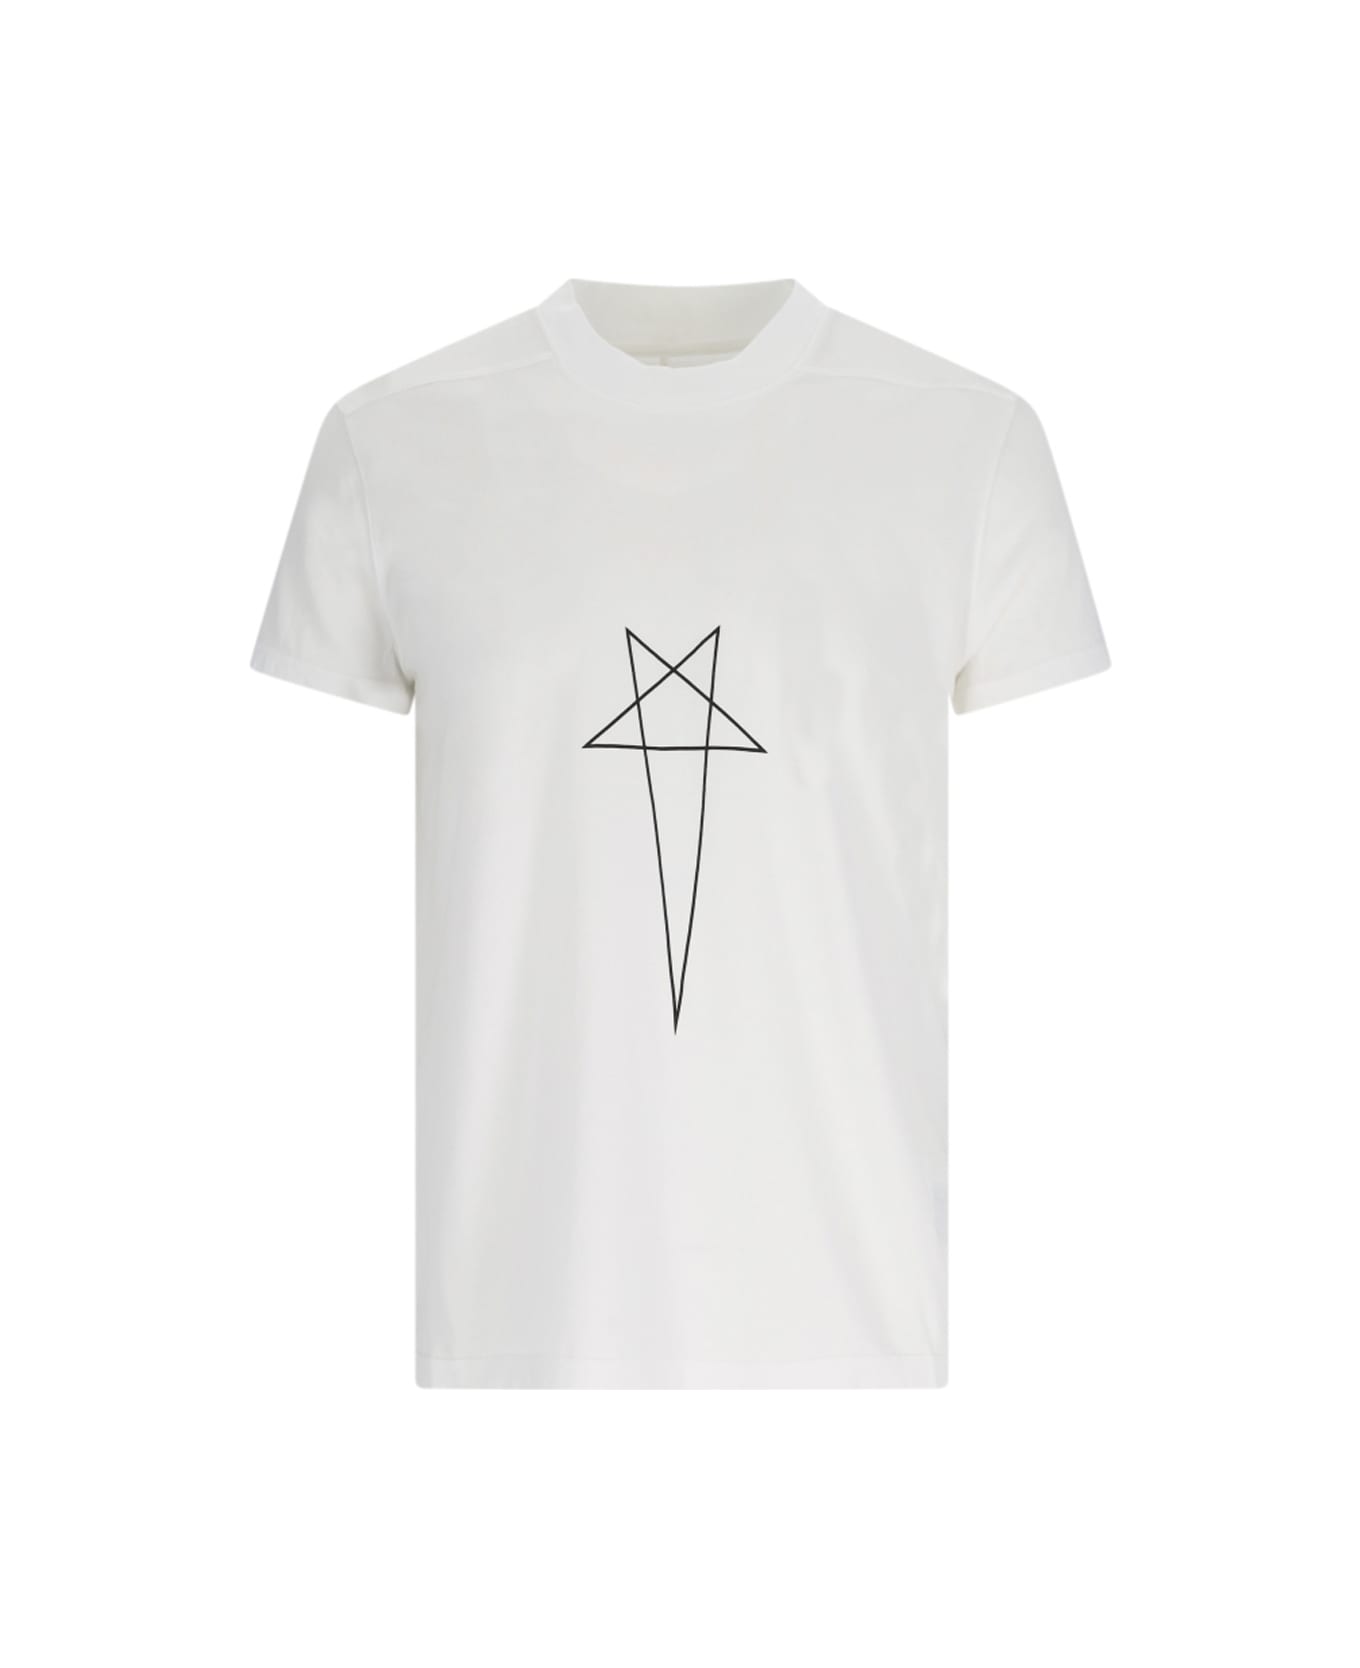 DRKSHDW T-shirt - White シャツ